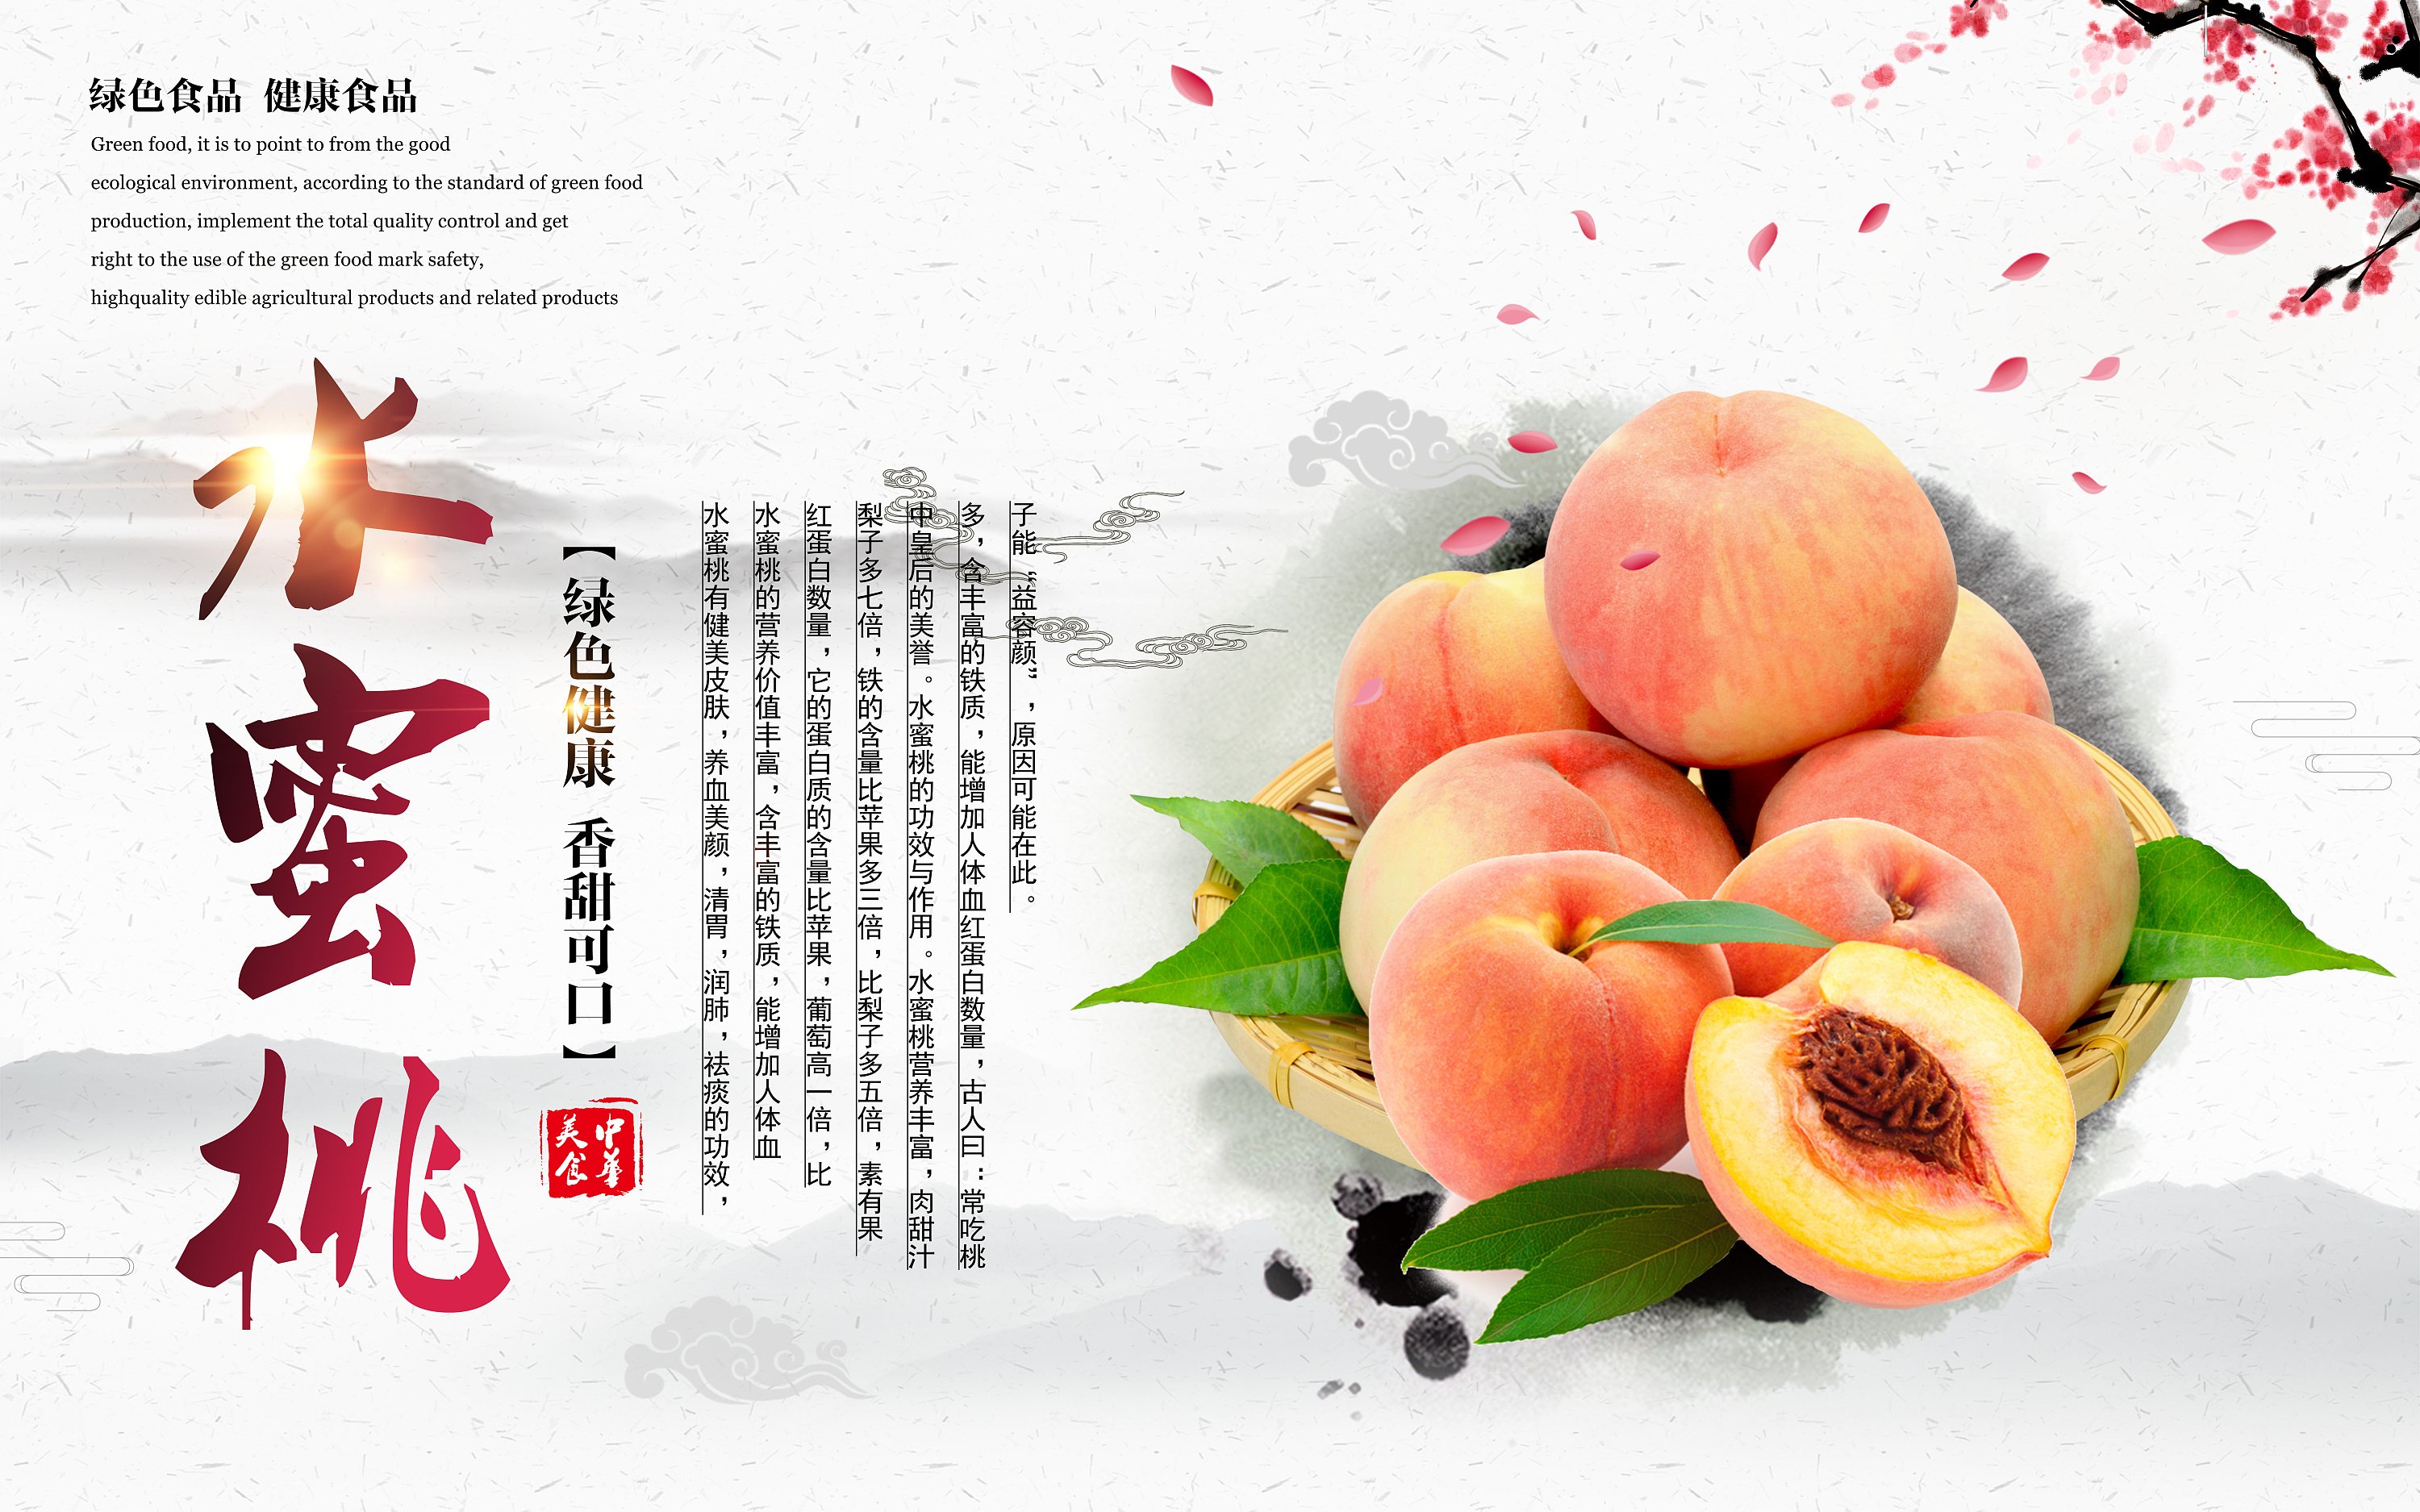 南汇水蜜桃广告图片